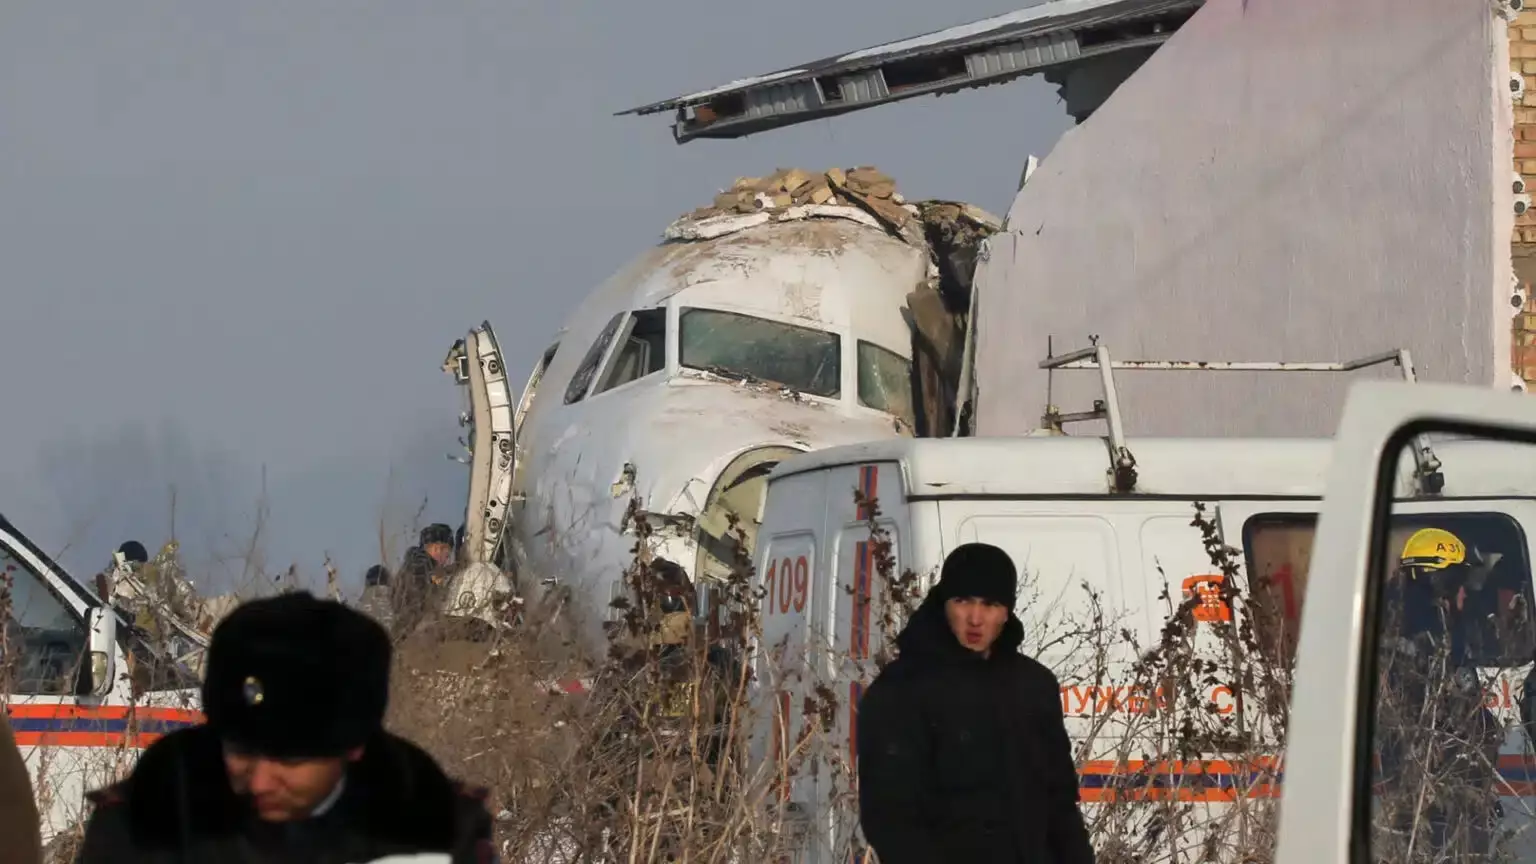 МВД РК спустя почти пять лет расследования считает виновными в крушении самолета Bek Air погибших пилотов